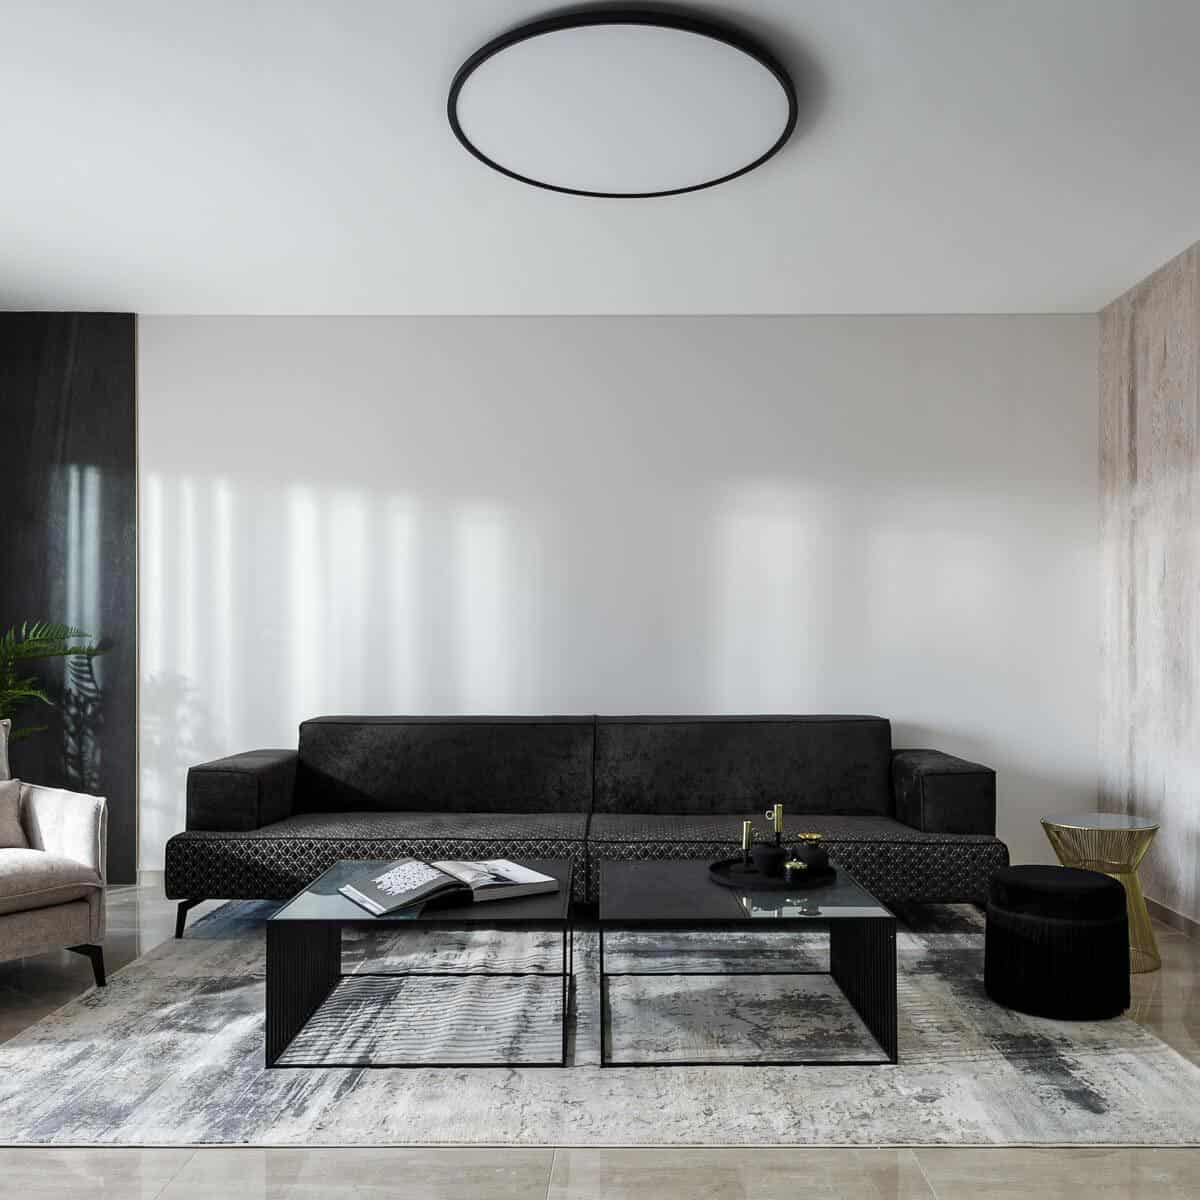 שטיח מדריד 04 אפור | השטיח האדום | עיצוב: דנית רוטמן, צילום: אורן עמוס